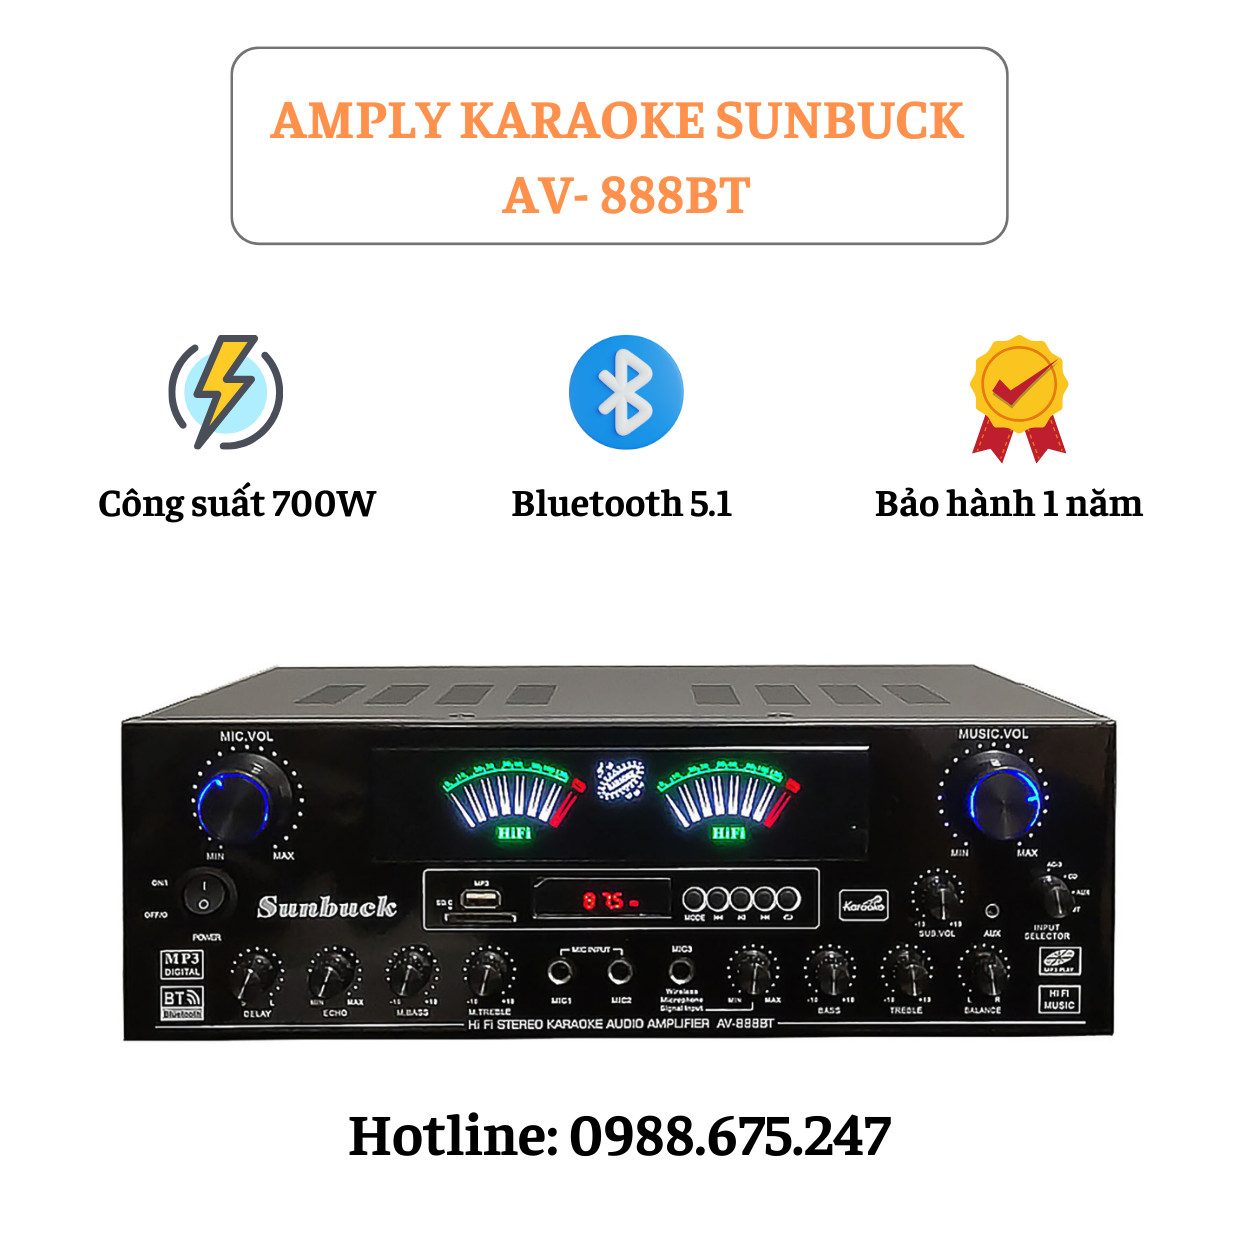 Amply Sunbuck 888BT đánh nhạc cực xịn, âm thanh cực đỉnh, amply karaoke có kết nối bluetooth